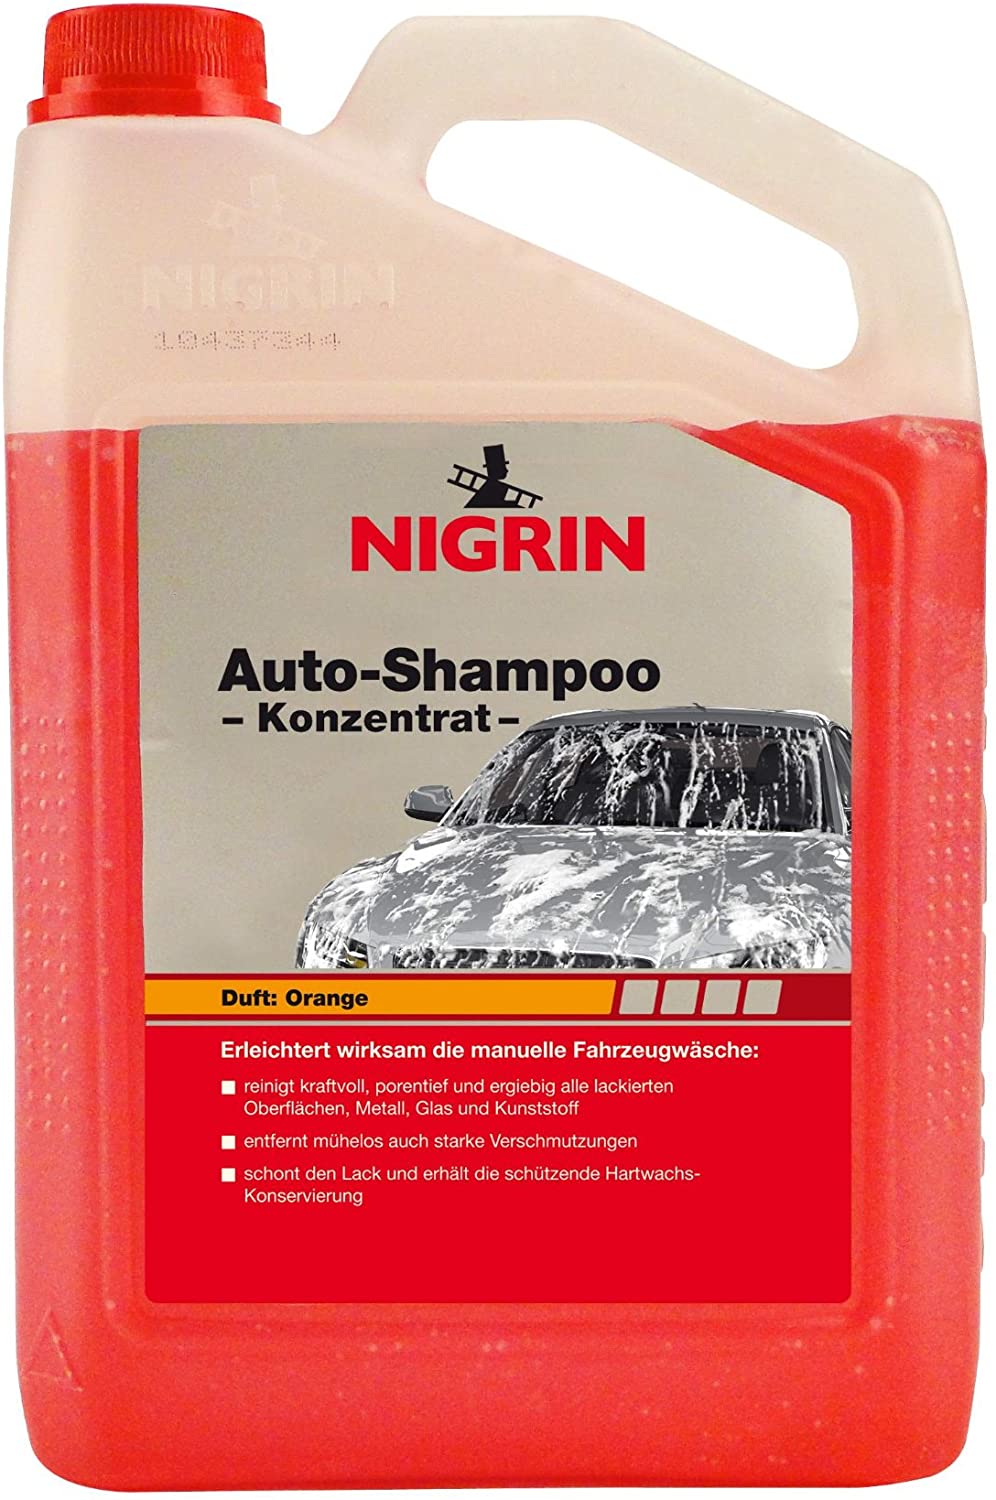 Nigrin Auto-Shampoo Konzentrat Durftrichtung Orange - 3000ml